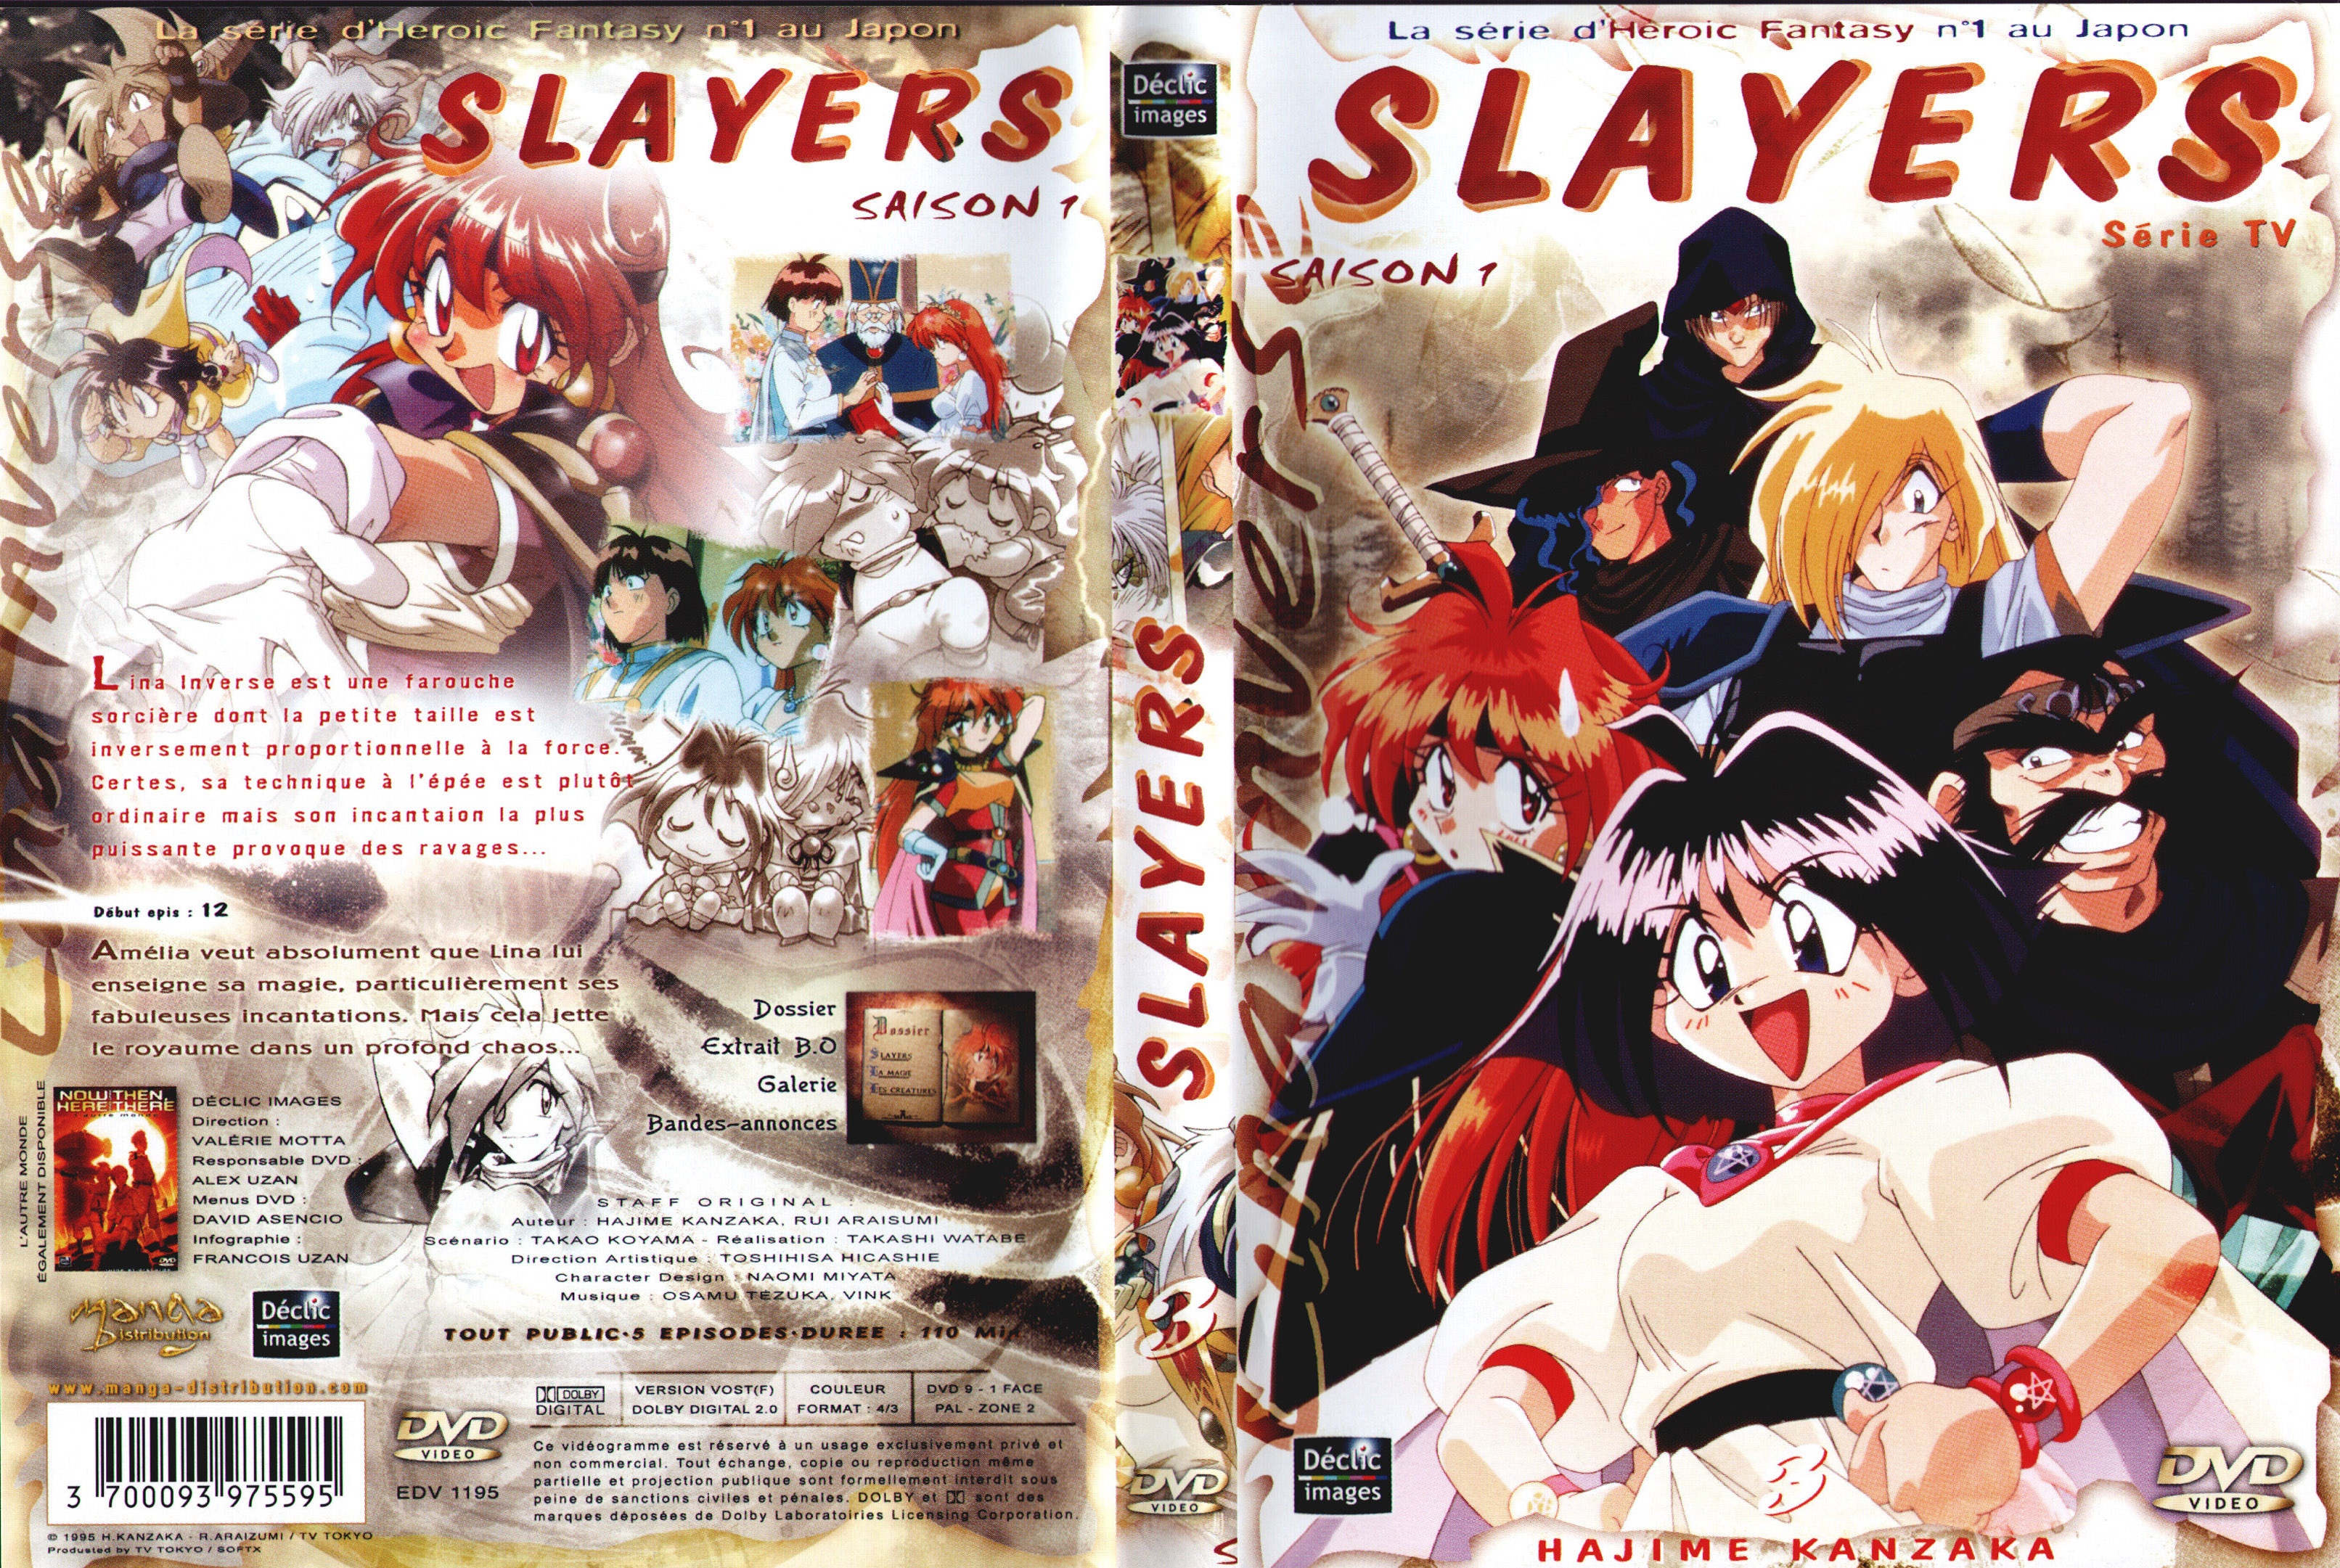 Jaquette DVD Slayers saison 1 DVD 3